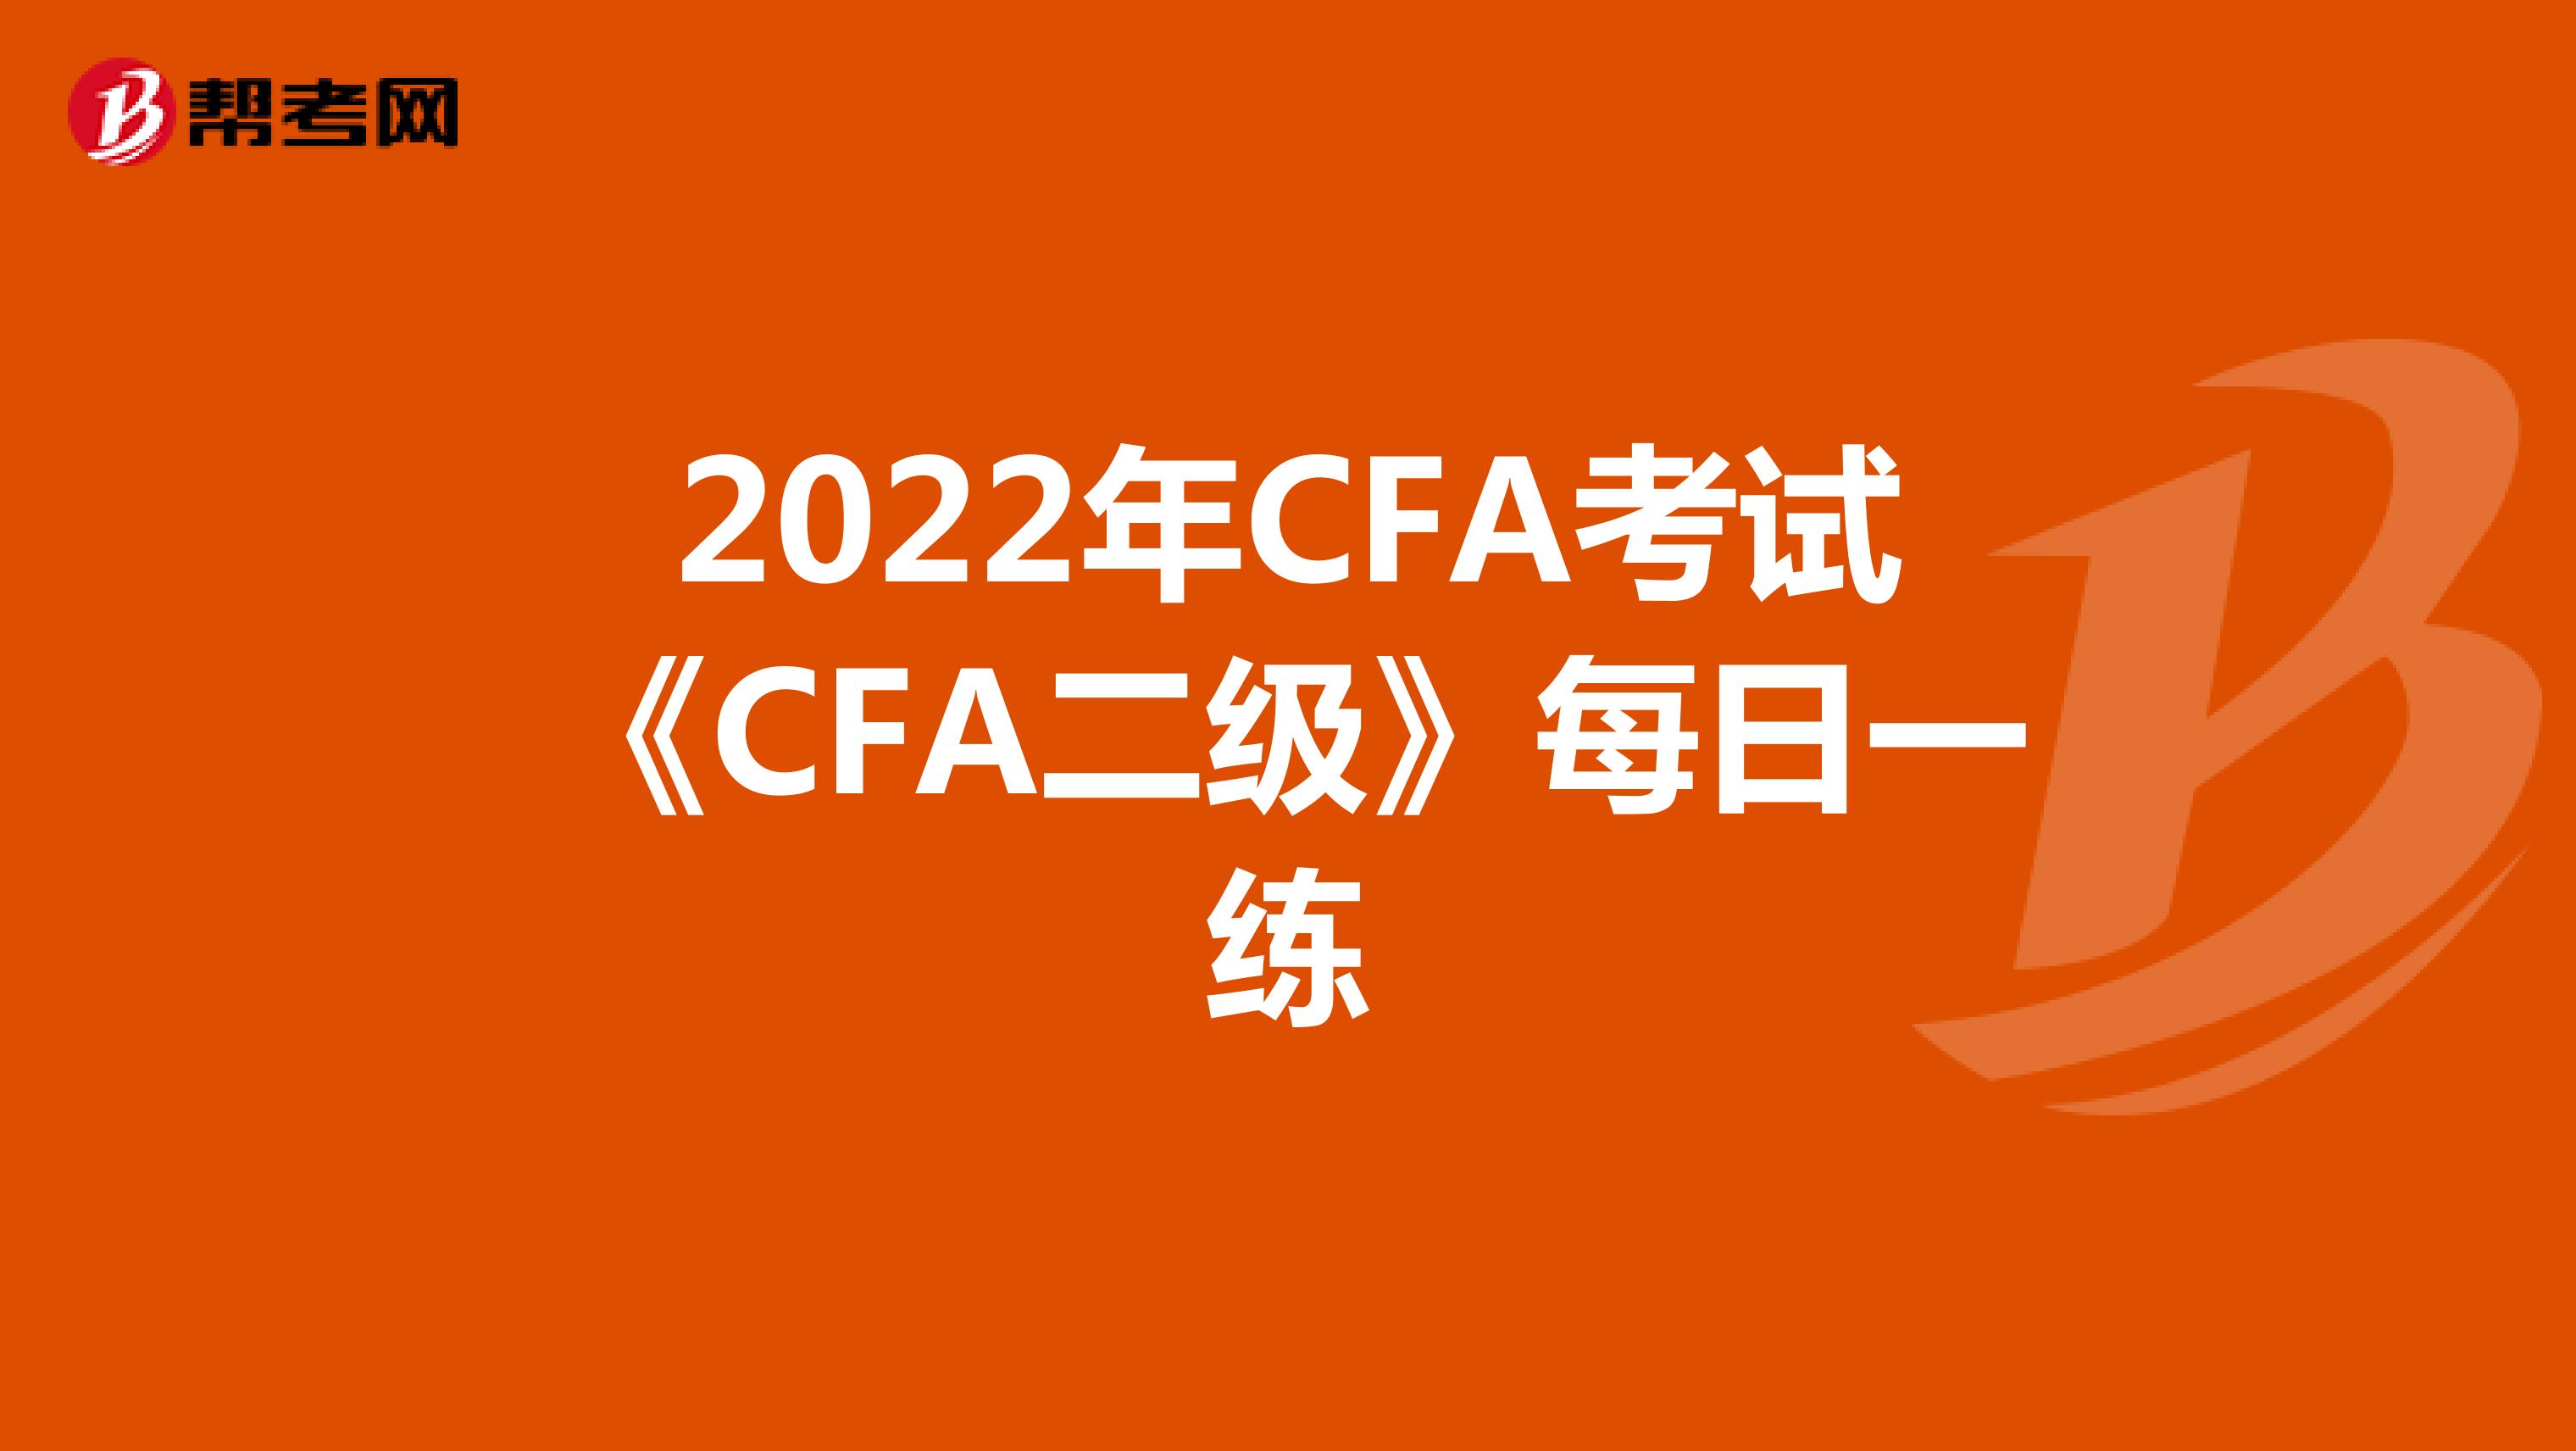 2022年CFA考试《CFA二级》每日一练